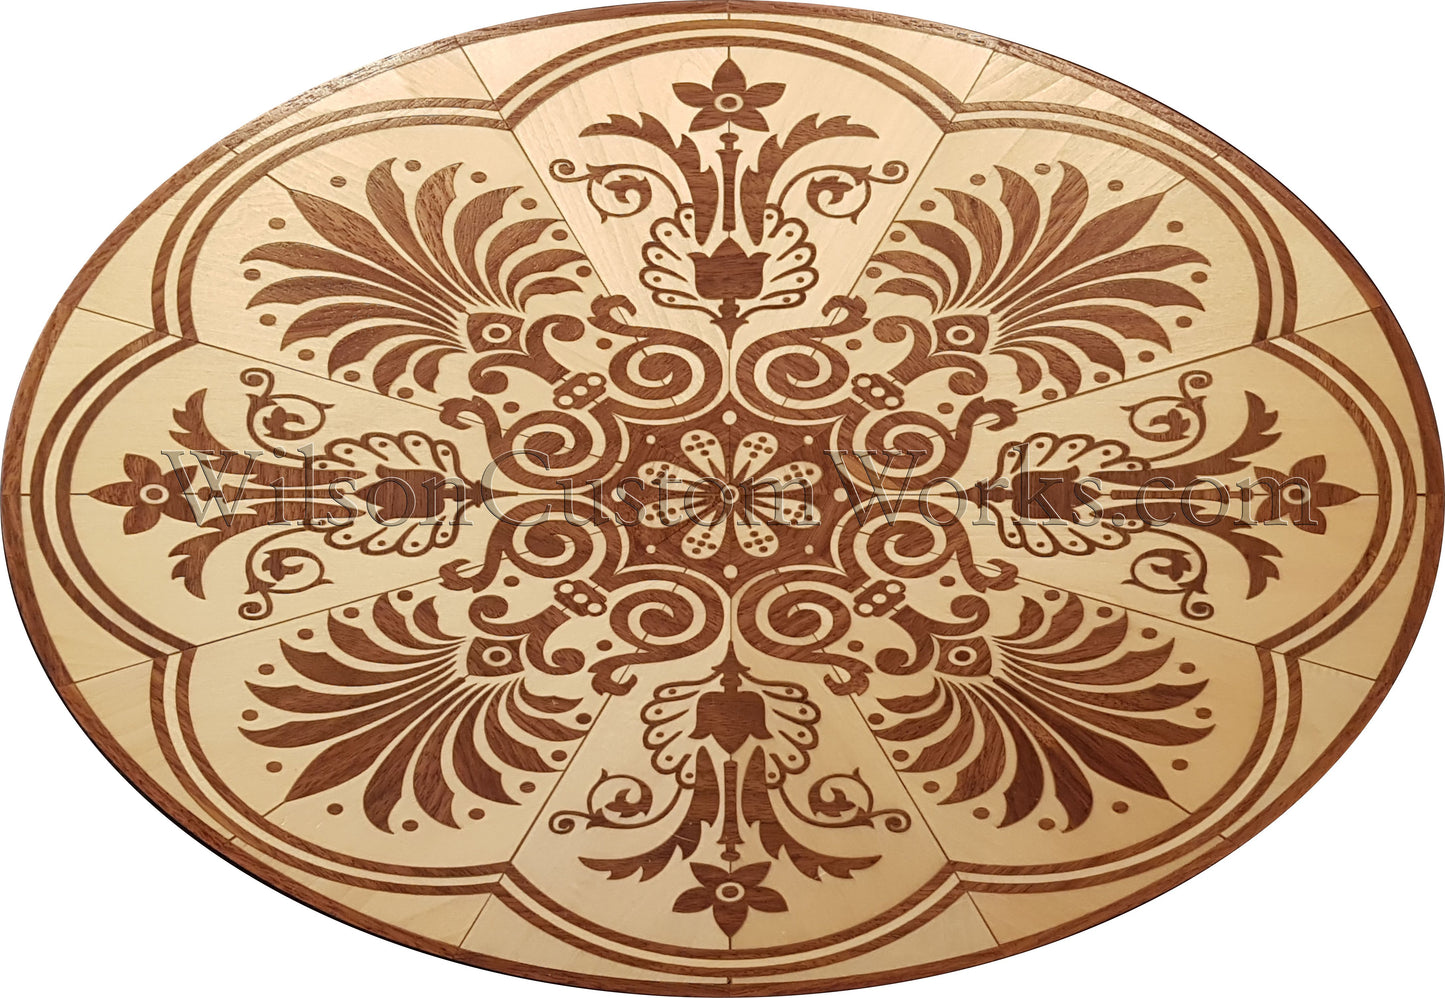 Wilson Custom Works hardwood wood floor inlay medallion maui oval design